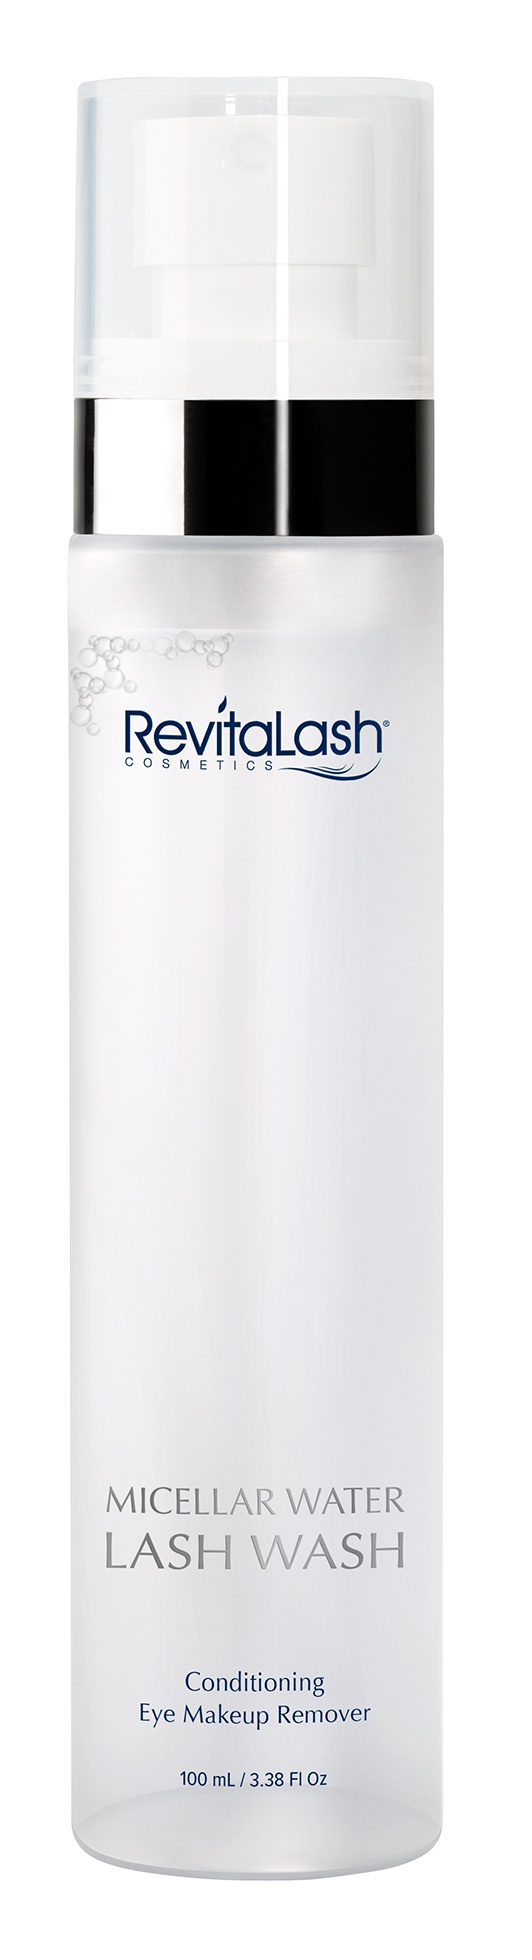 RevitaLash Cosmetics Micellar Water Lash Wash